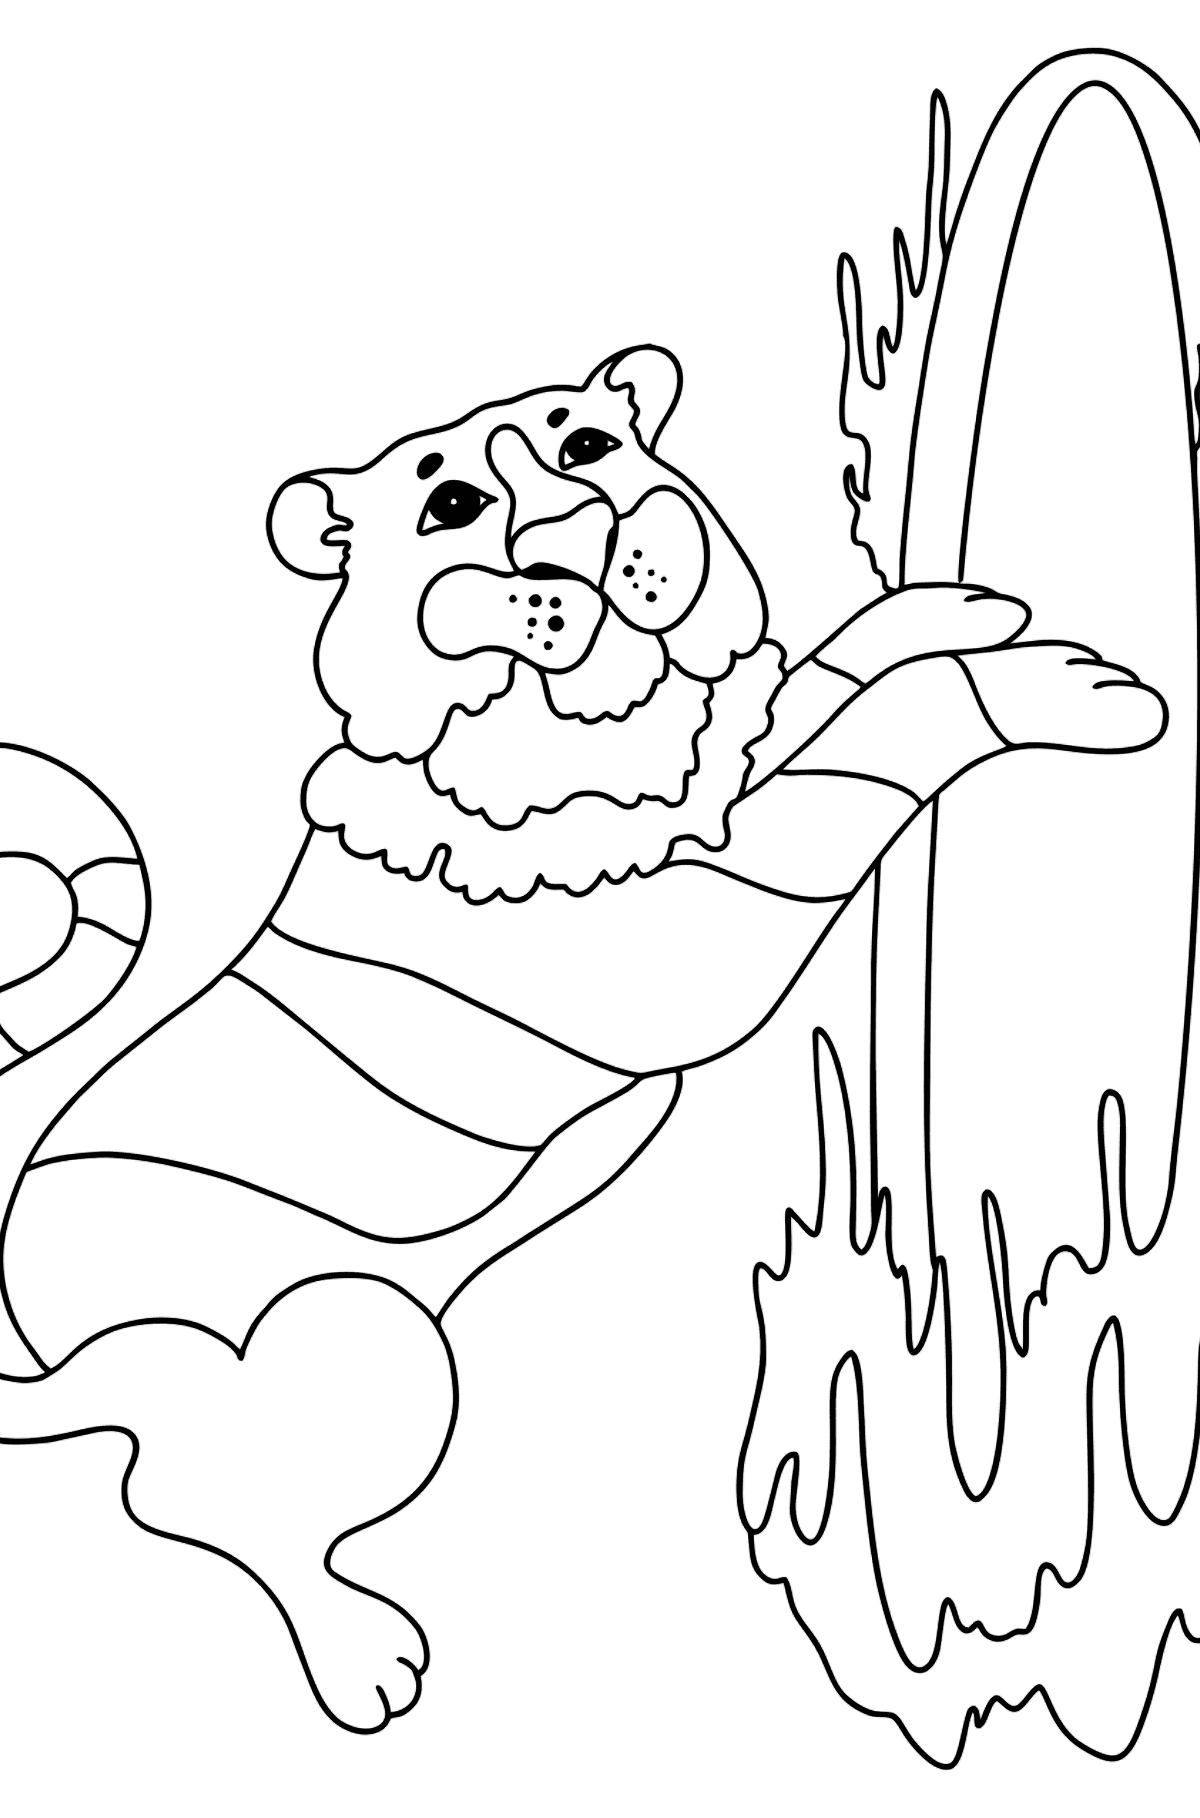 Desenho de tigre no circo para colorir (difícil) - Imagens para Colorir para Crianças